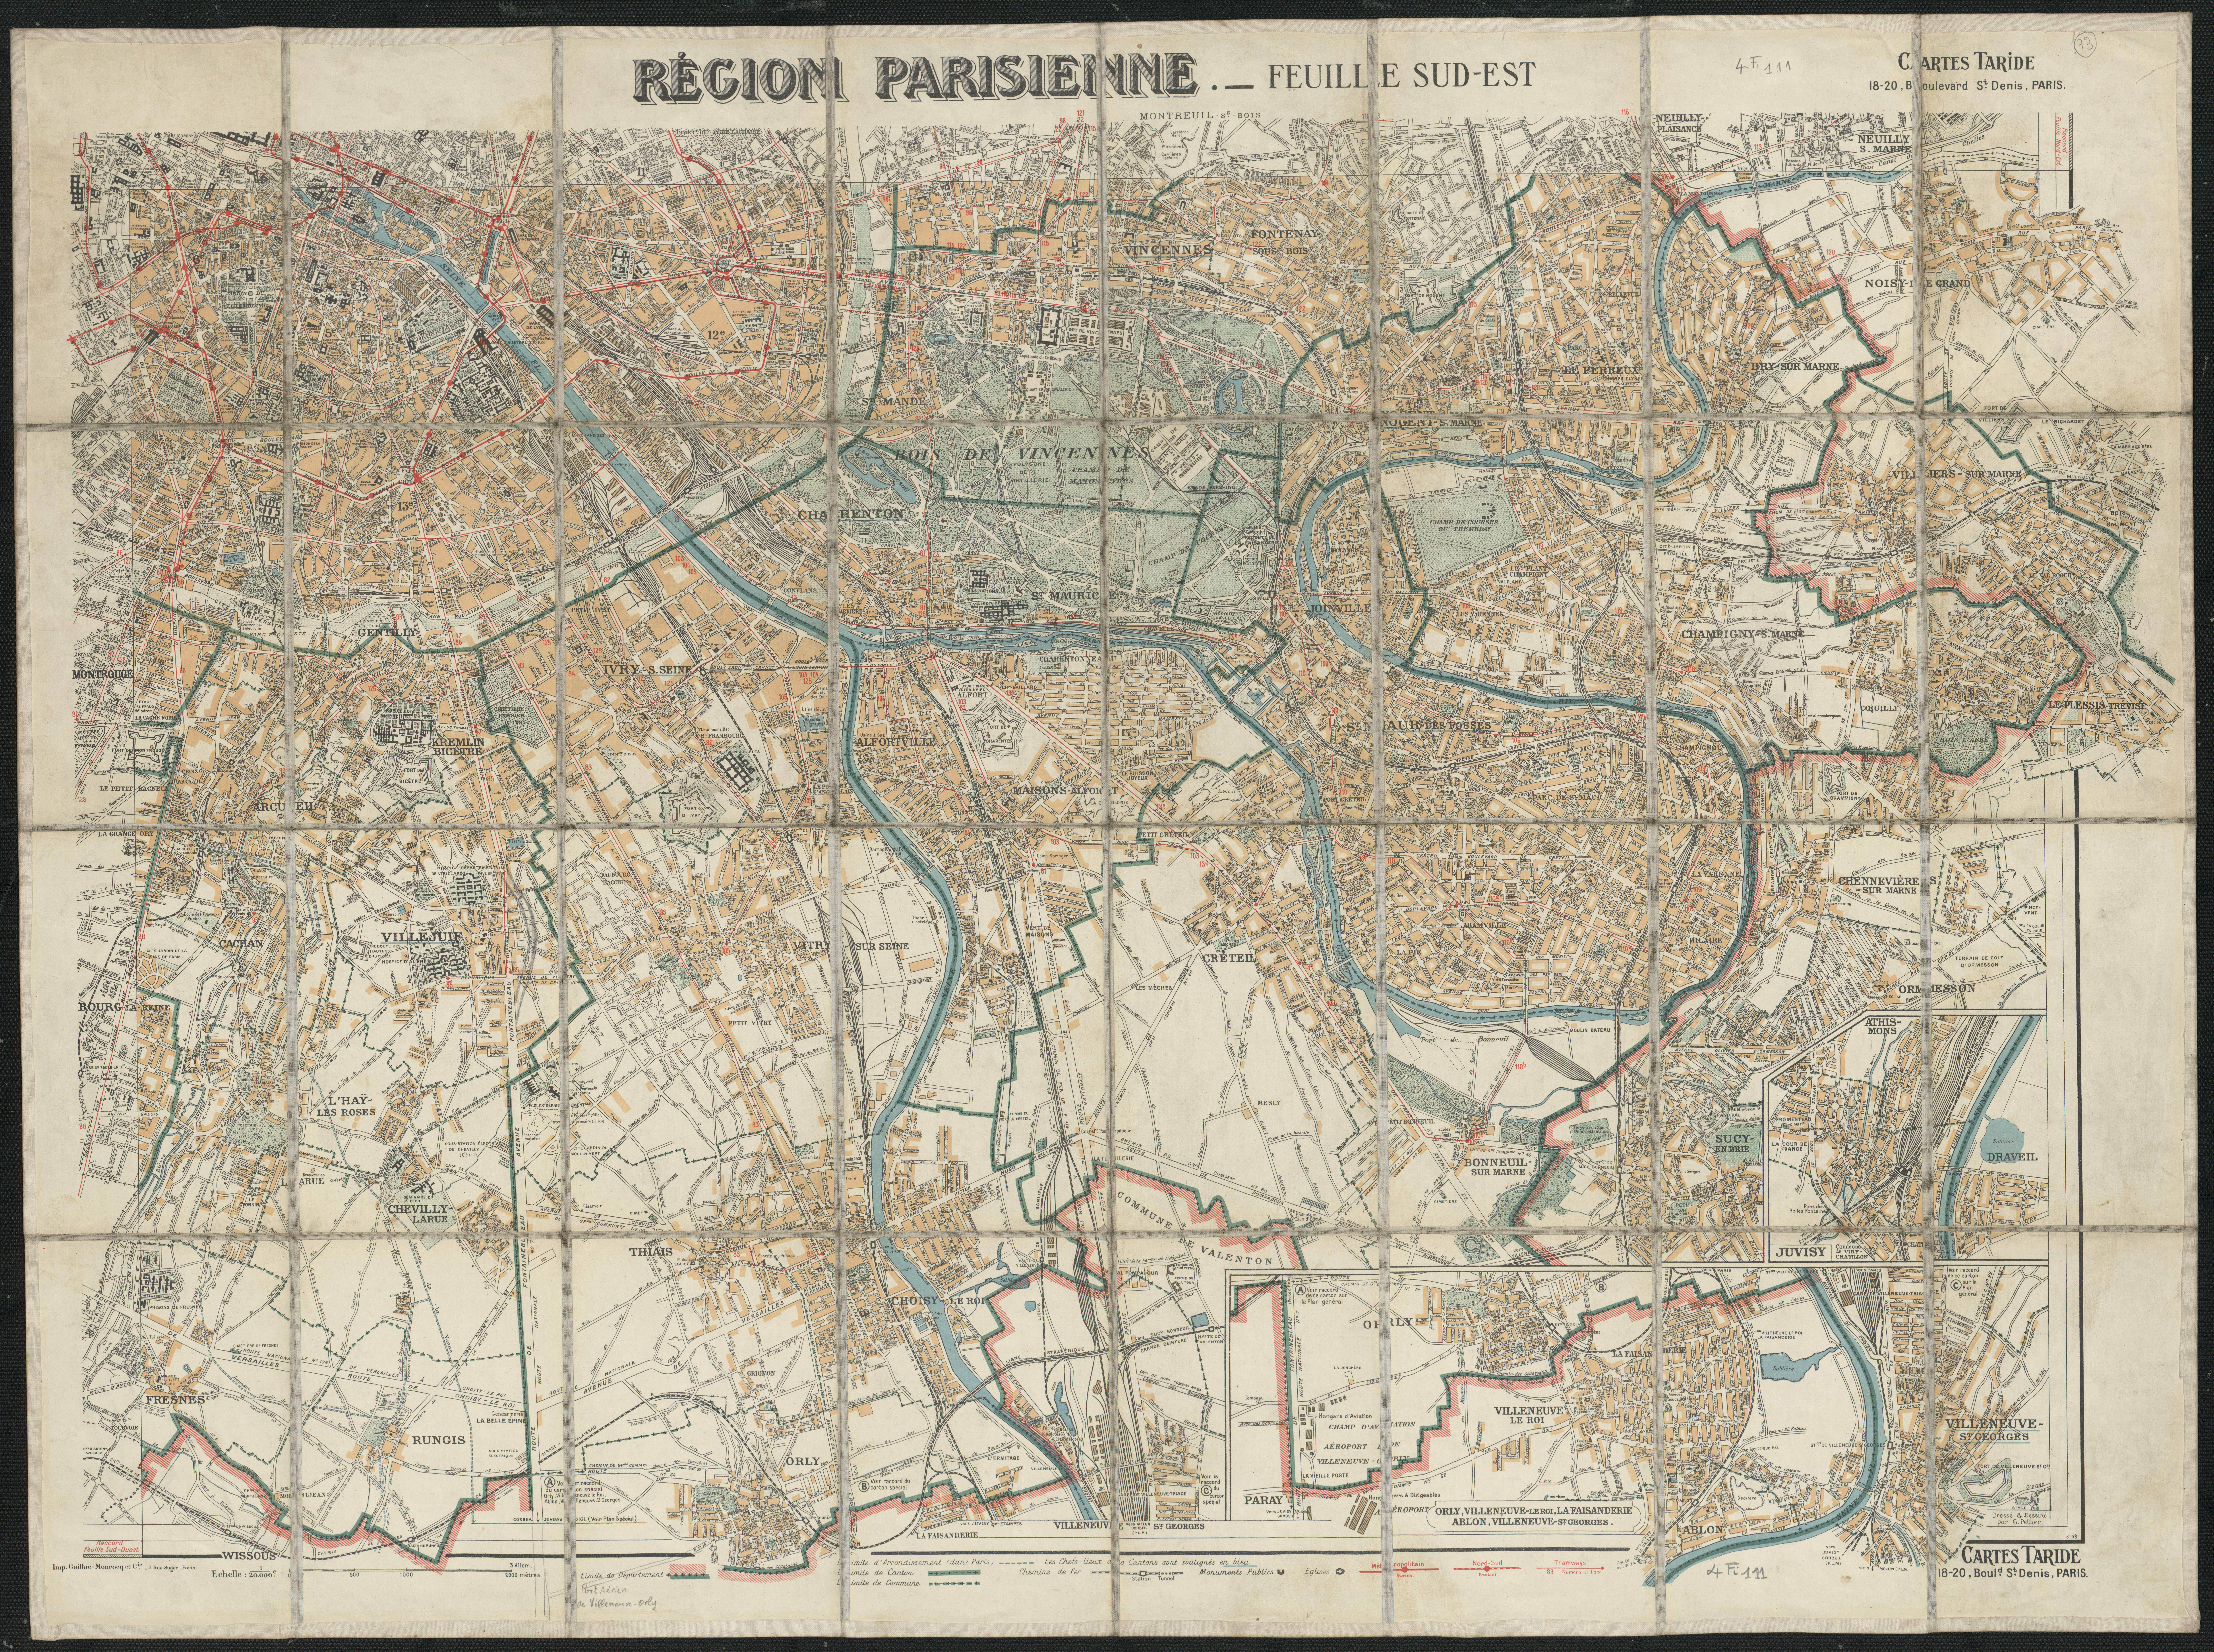 Région parisienne : feuille sud-est. 1934.